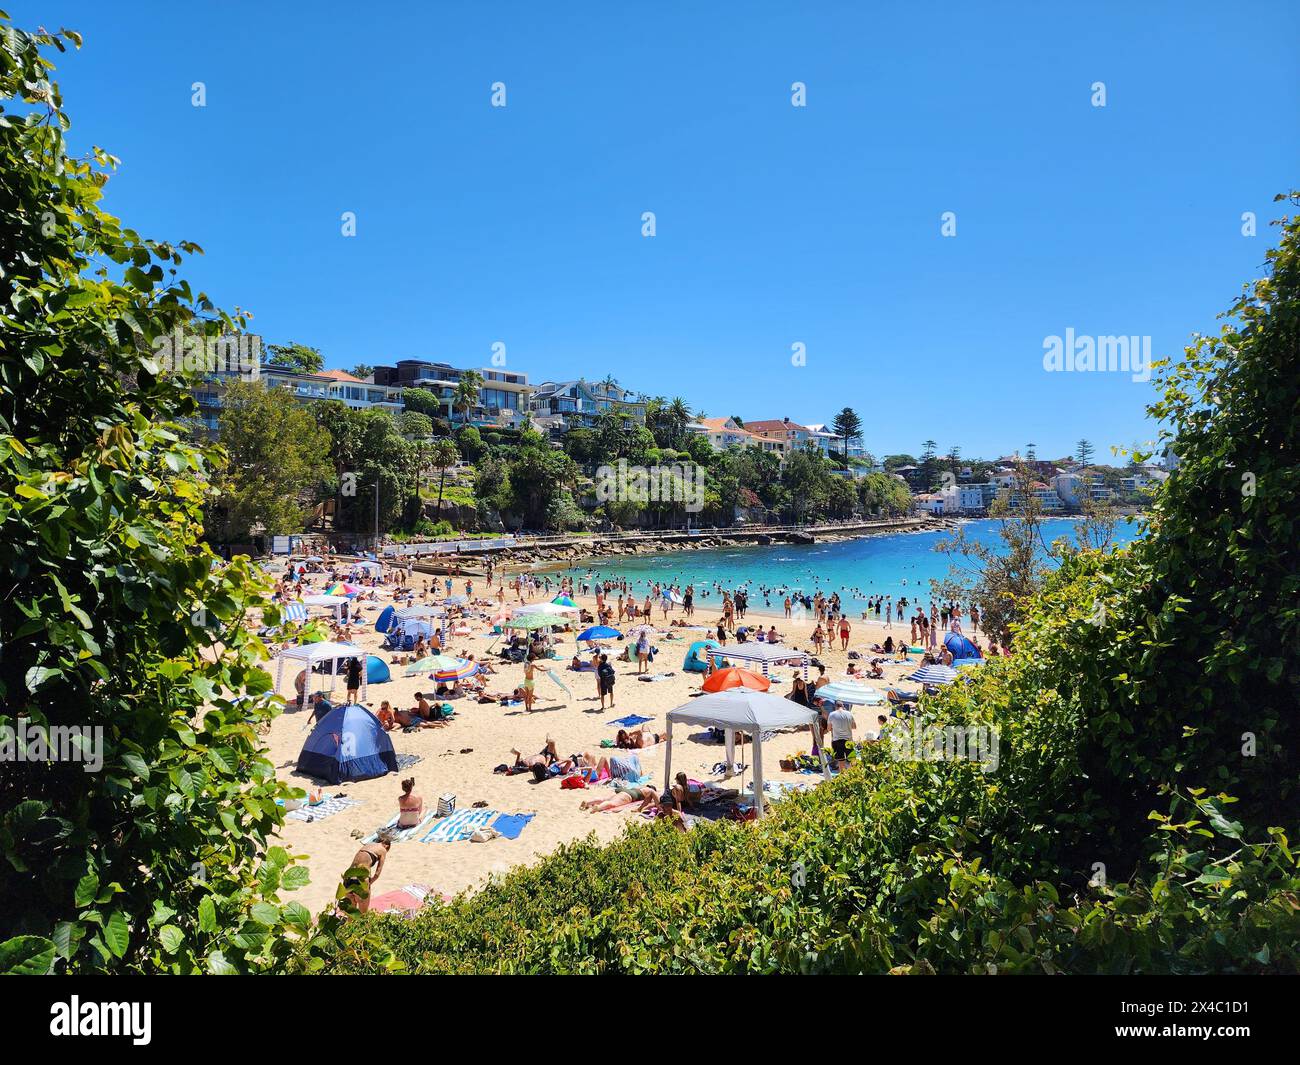 Shelly Beach, à Sydney, Australie, avec des gens sur le sable bronzant au soleil, plongeant dans la mer, dans une ambiance chaleureuse et animée. Banque D'Images